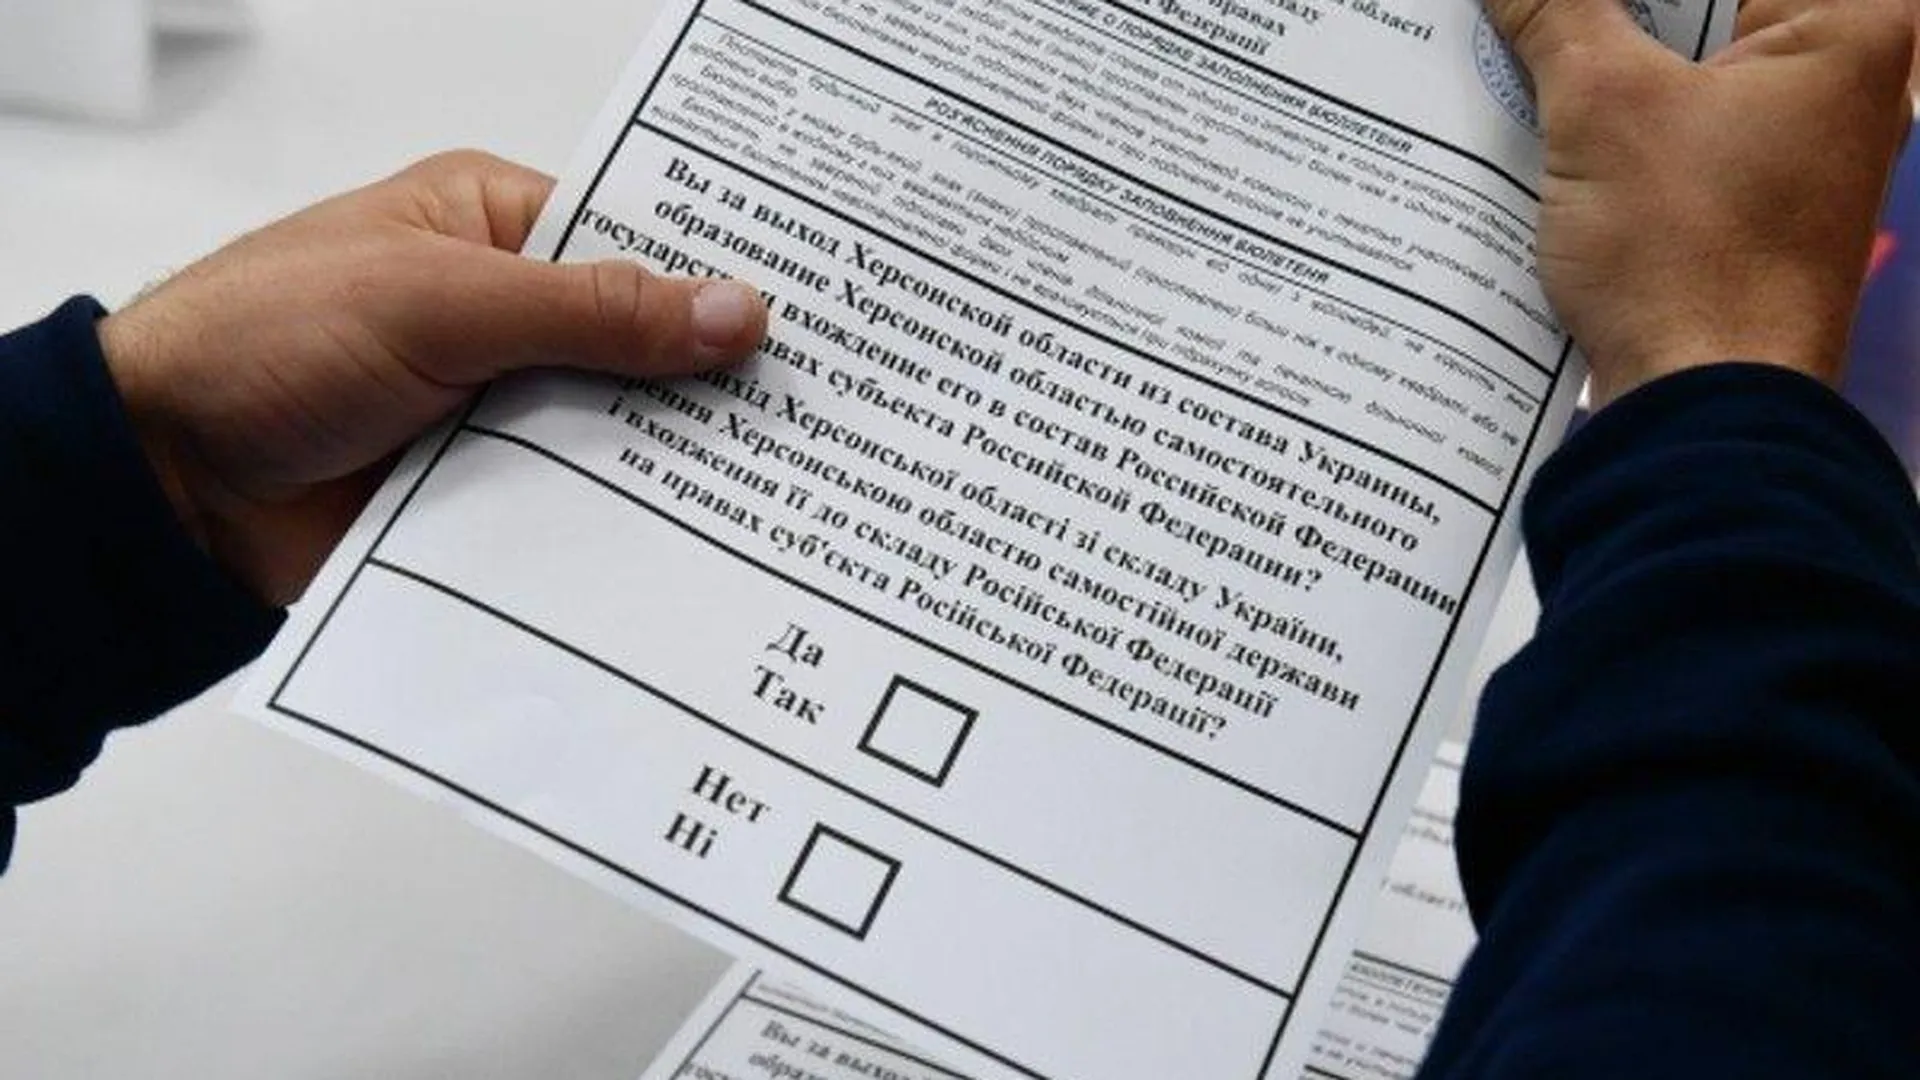 11 мест для голосования в референдуме организуют в Подмосковье